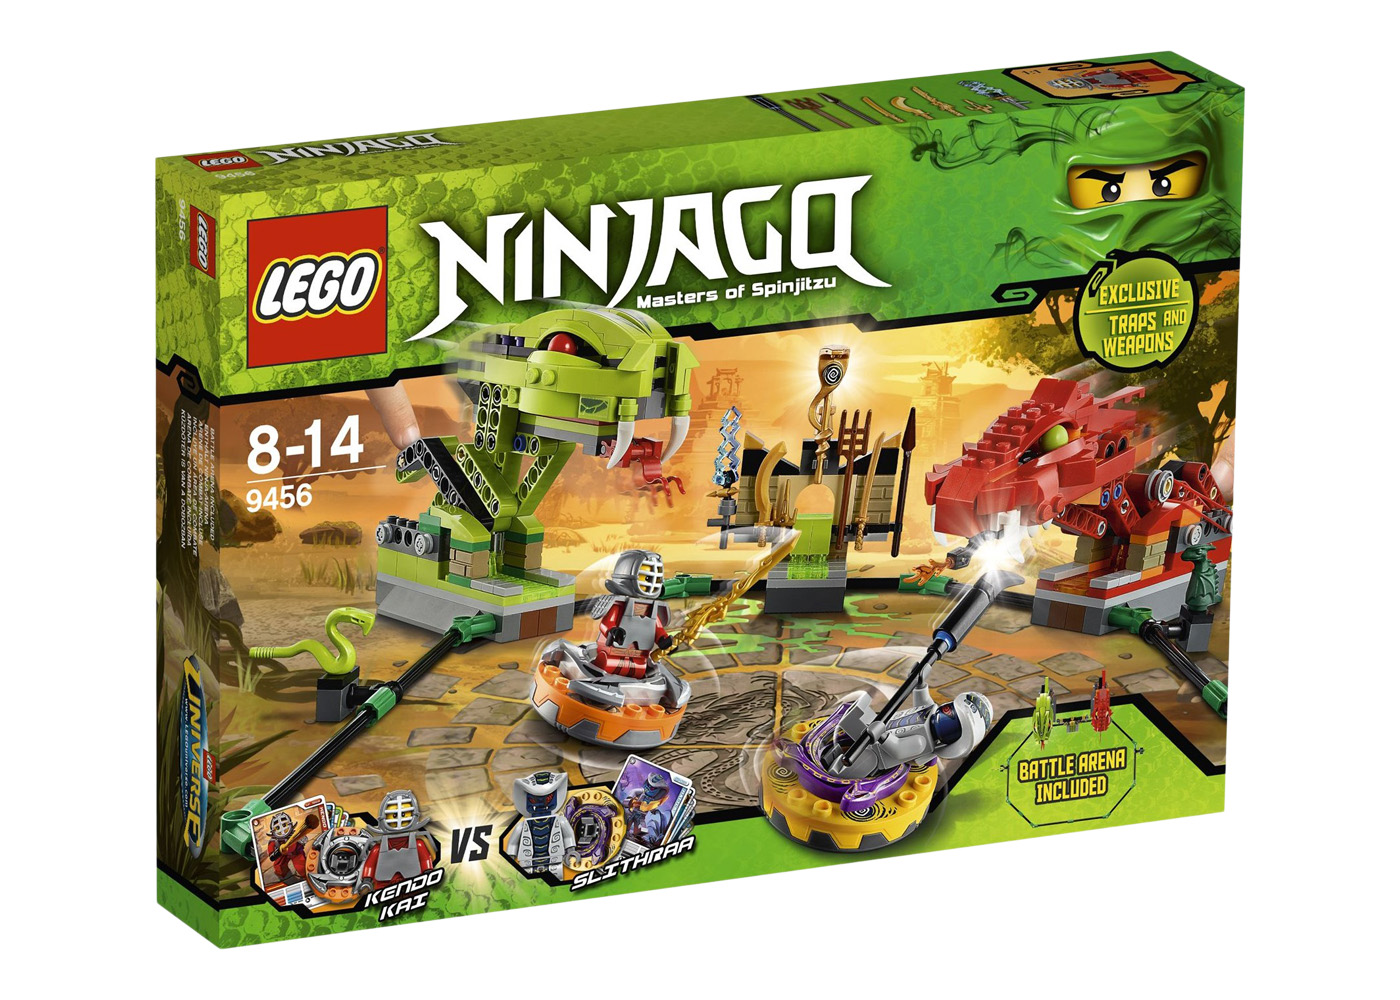 LEGO Ninjago Spinner Battle Arena Set 9456